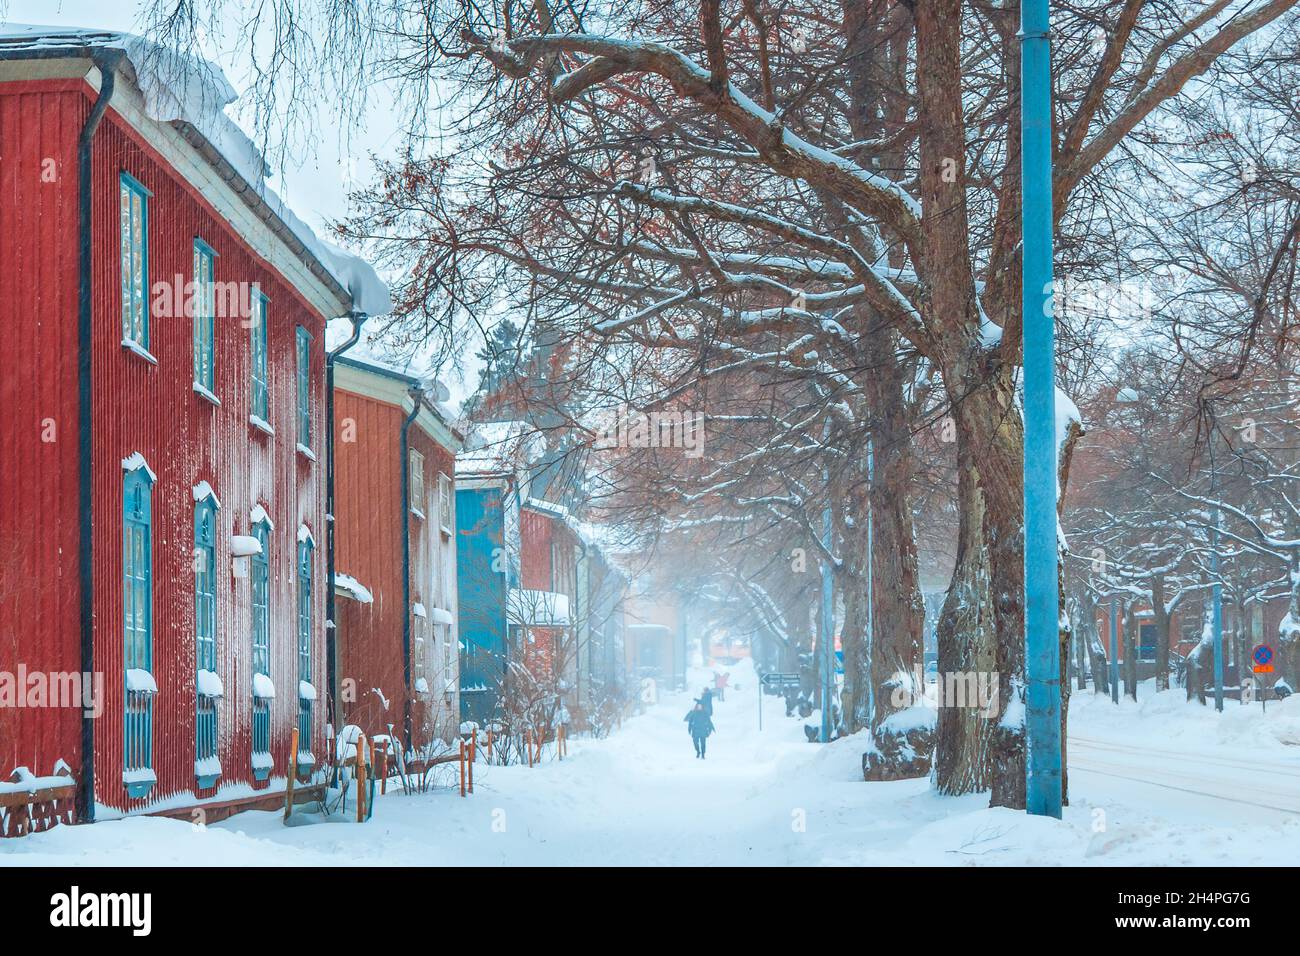 Tempête de neige en hiver.Les gens marchent dans une rue enneigée avec des maisons anciennes et colorées.Route enneigée avec bâtiments rouges.Chute de neige en ville.Architecture finlandaise. Banque D'Images